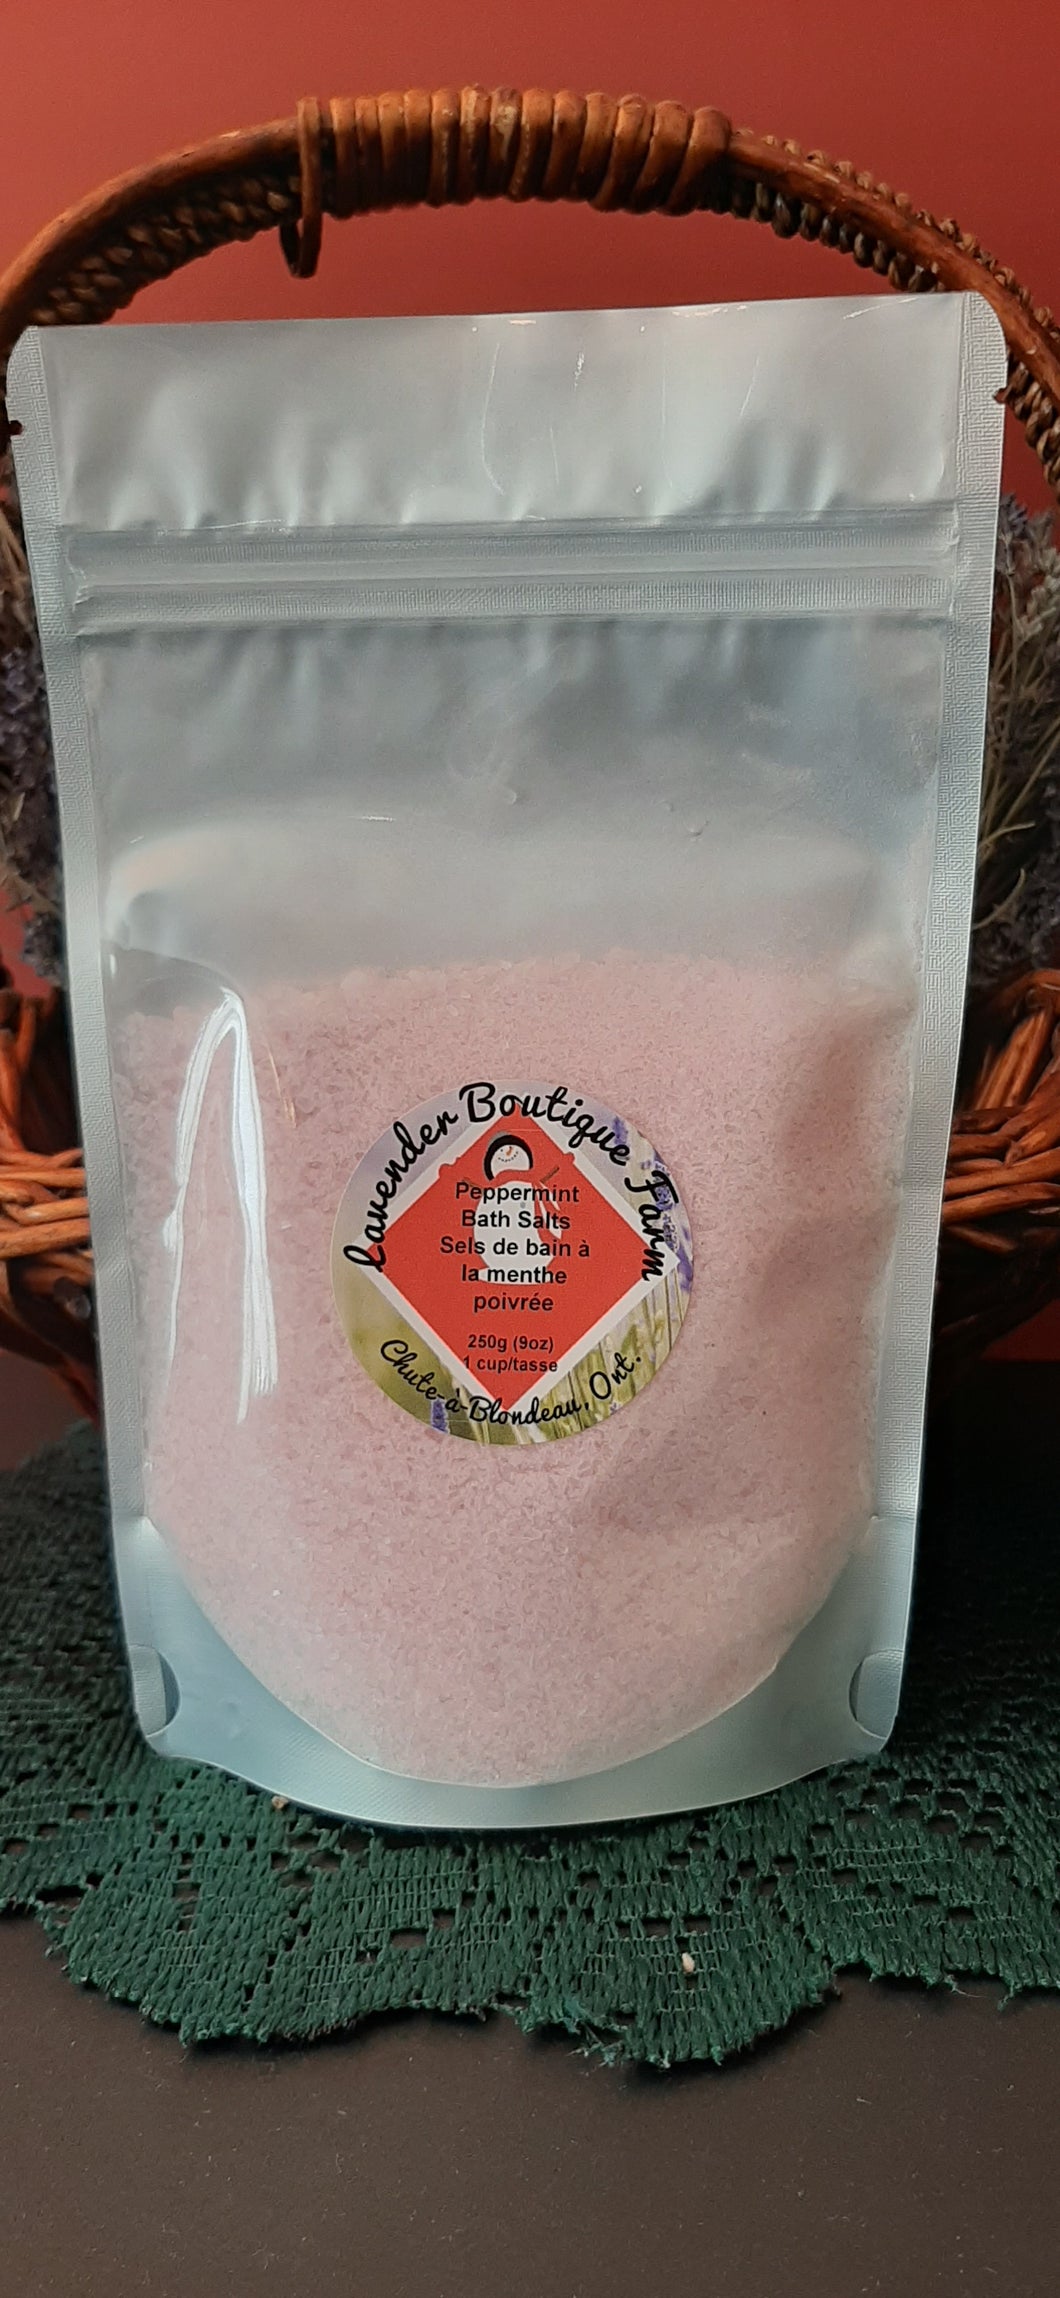 Peppermint bath salt pouch